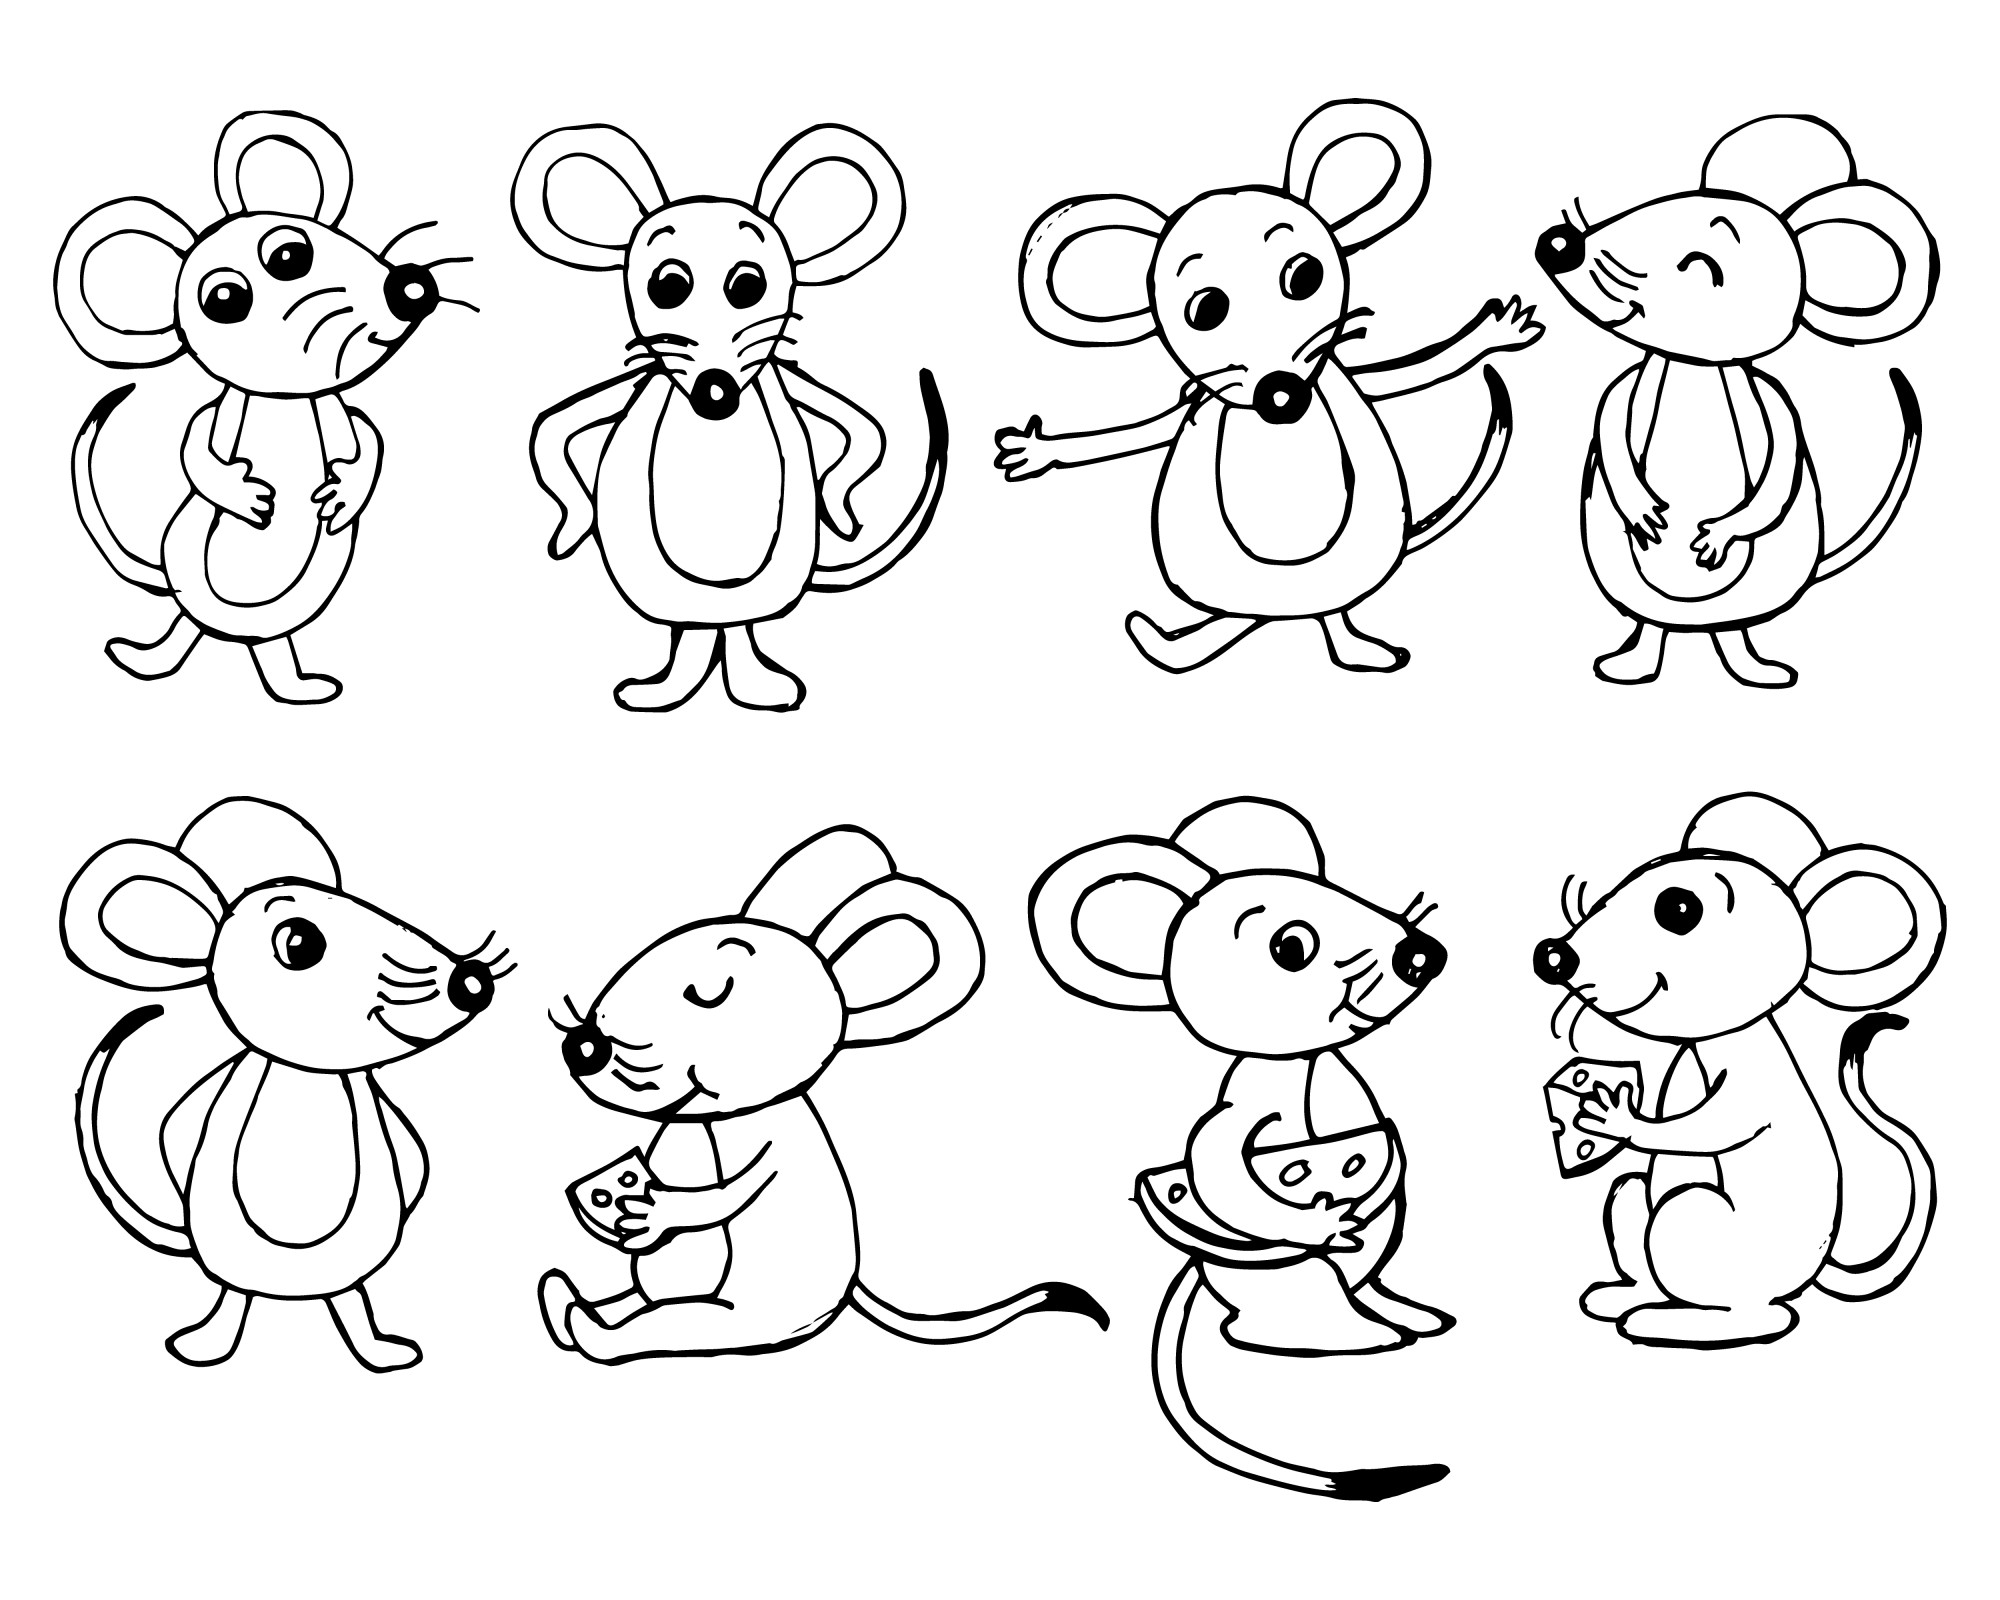 Раскраска для детей: коллекция милых мышек